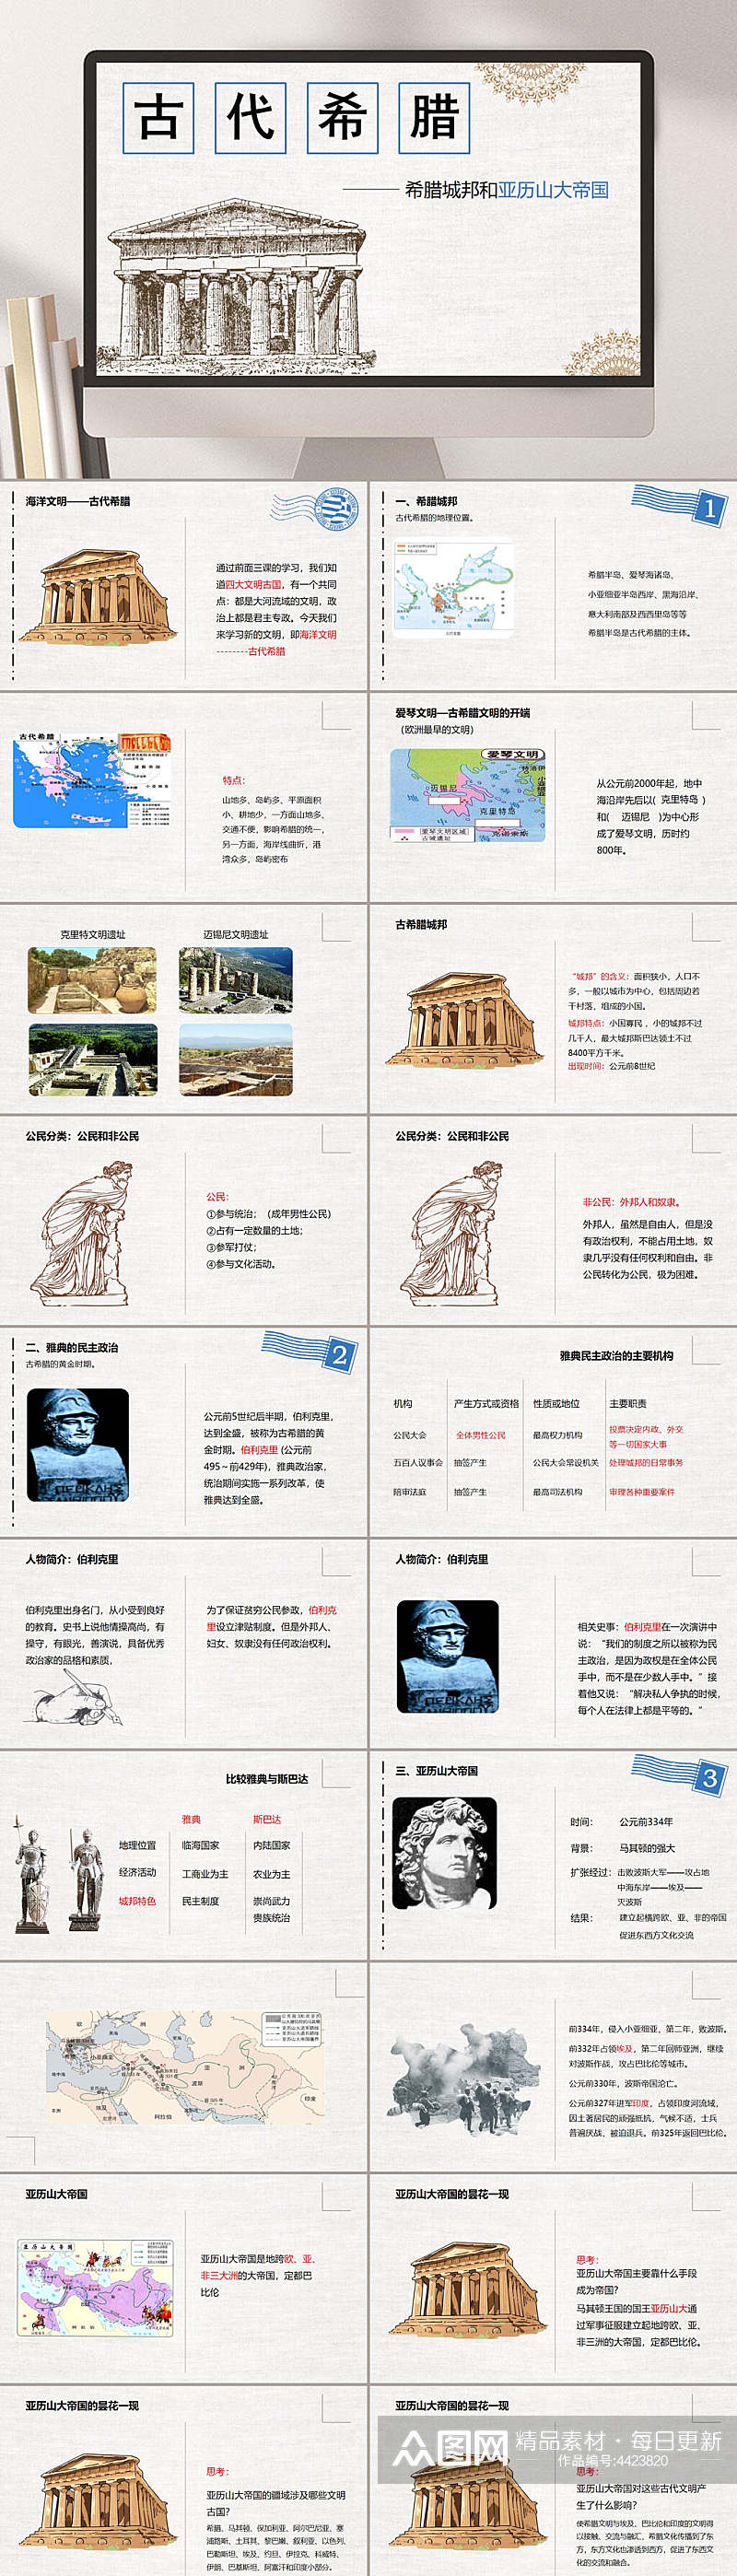 古代希腊中国近代史PPT素材